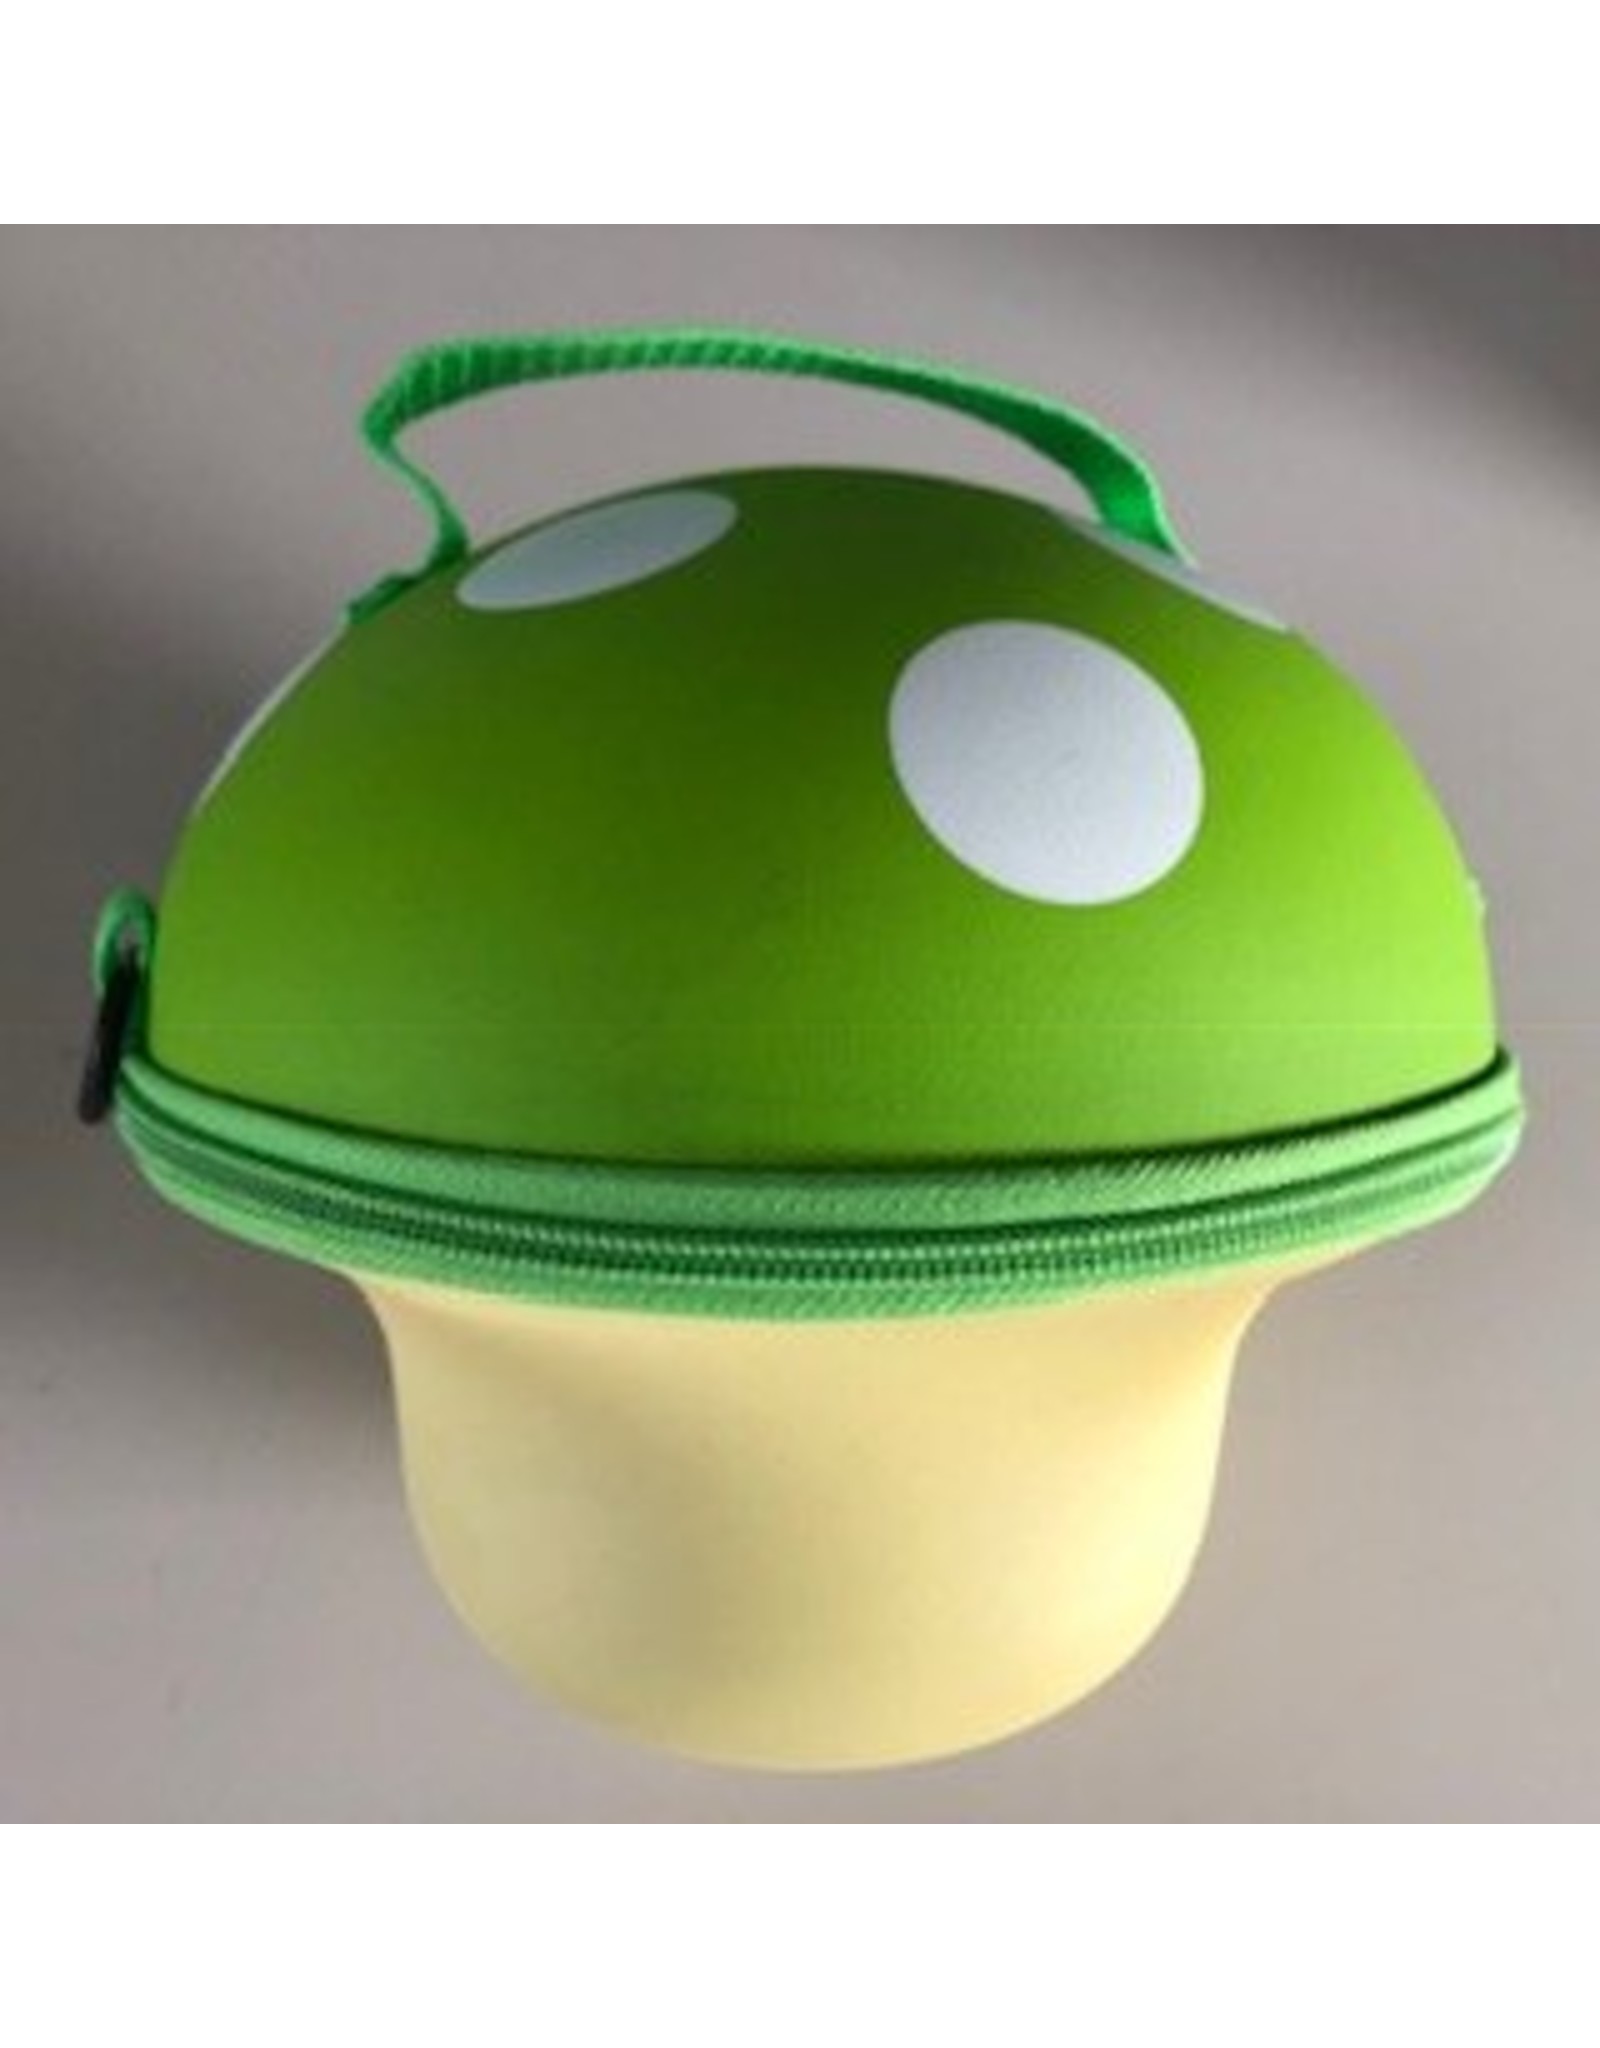 Childern's handbag Mushroom (Green)